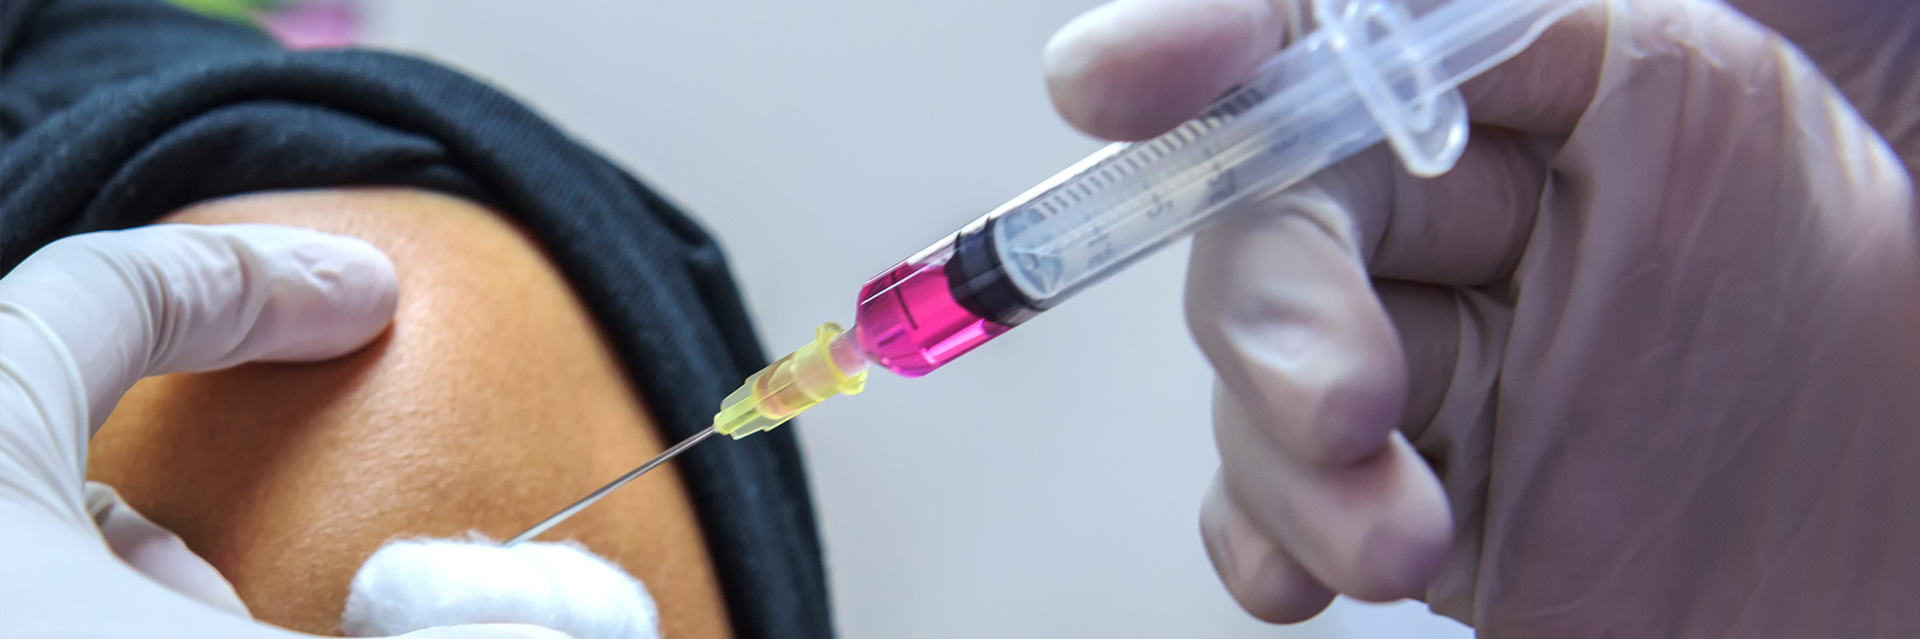 Szczepionka przeciw grypie - co powinieneś o niej wiedzieć